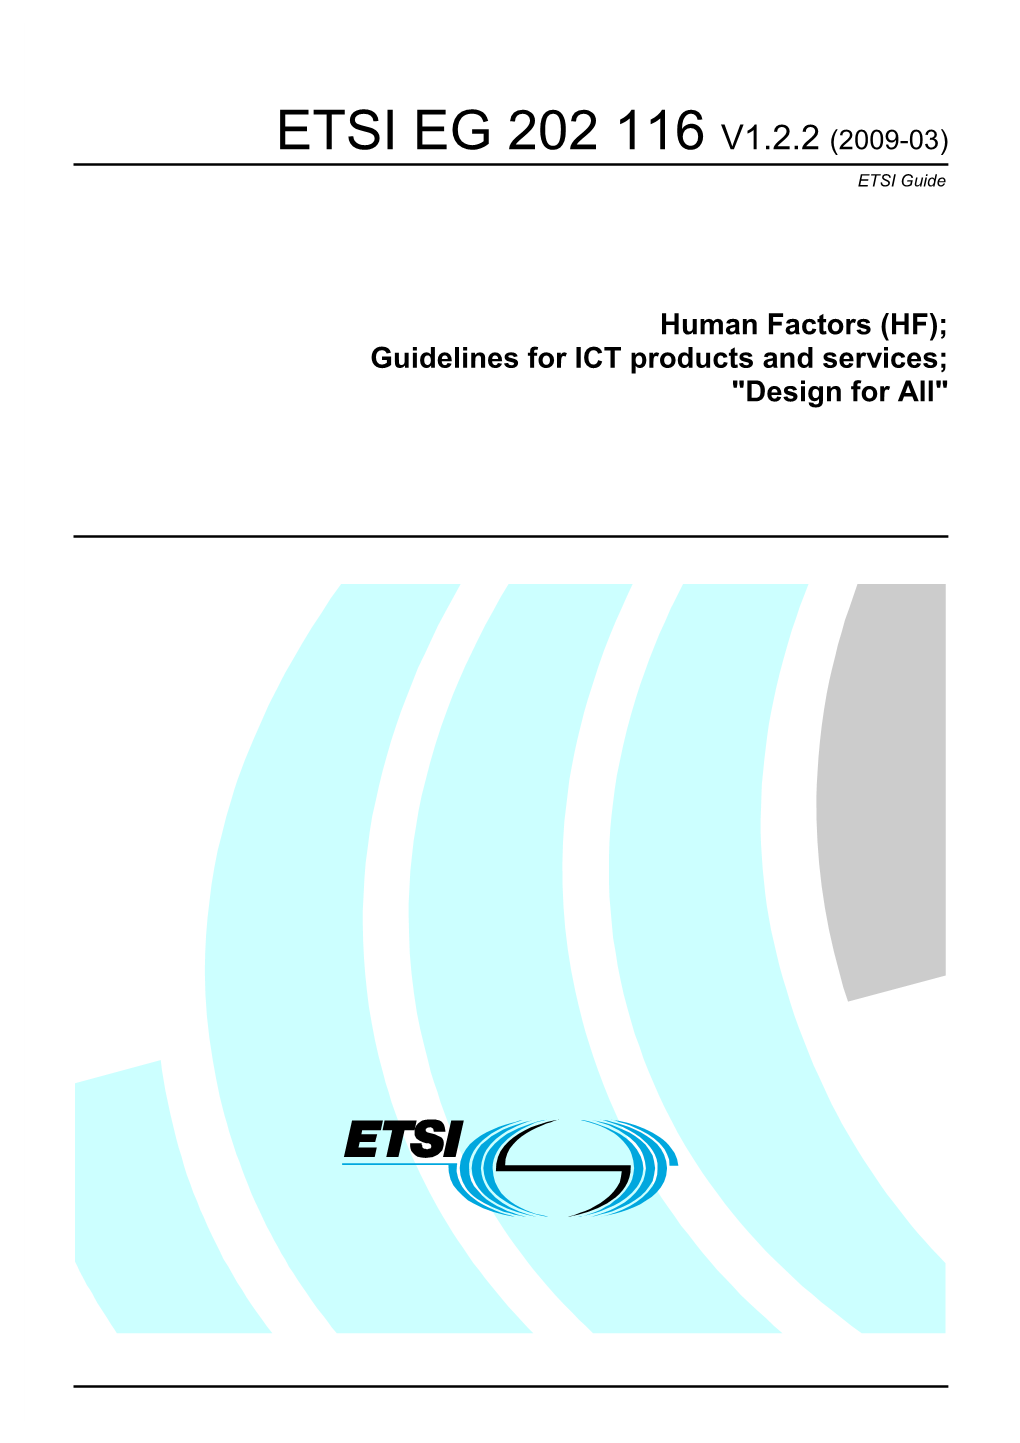 ETSI EG 202 116 V1.2.2 (2009-03) ETSI Guide